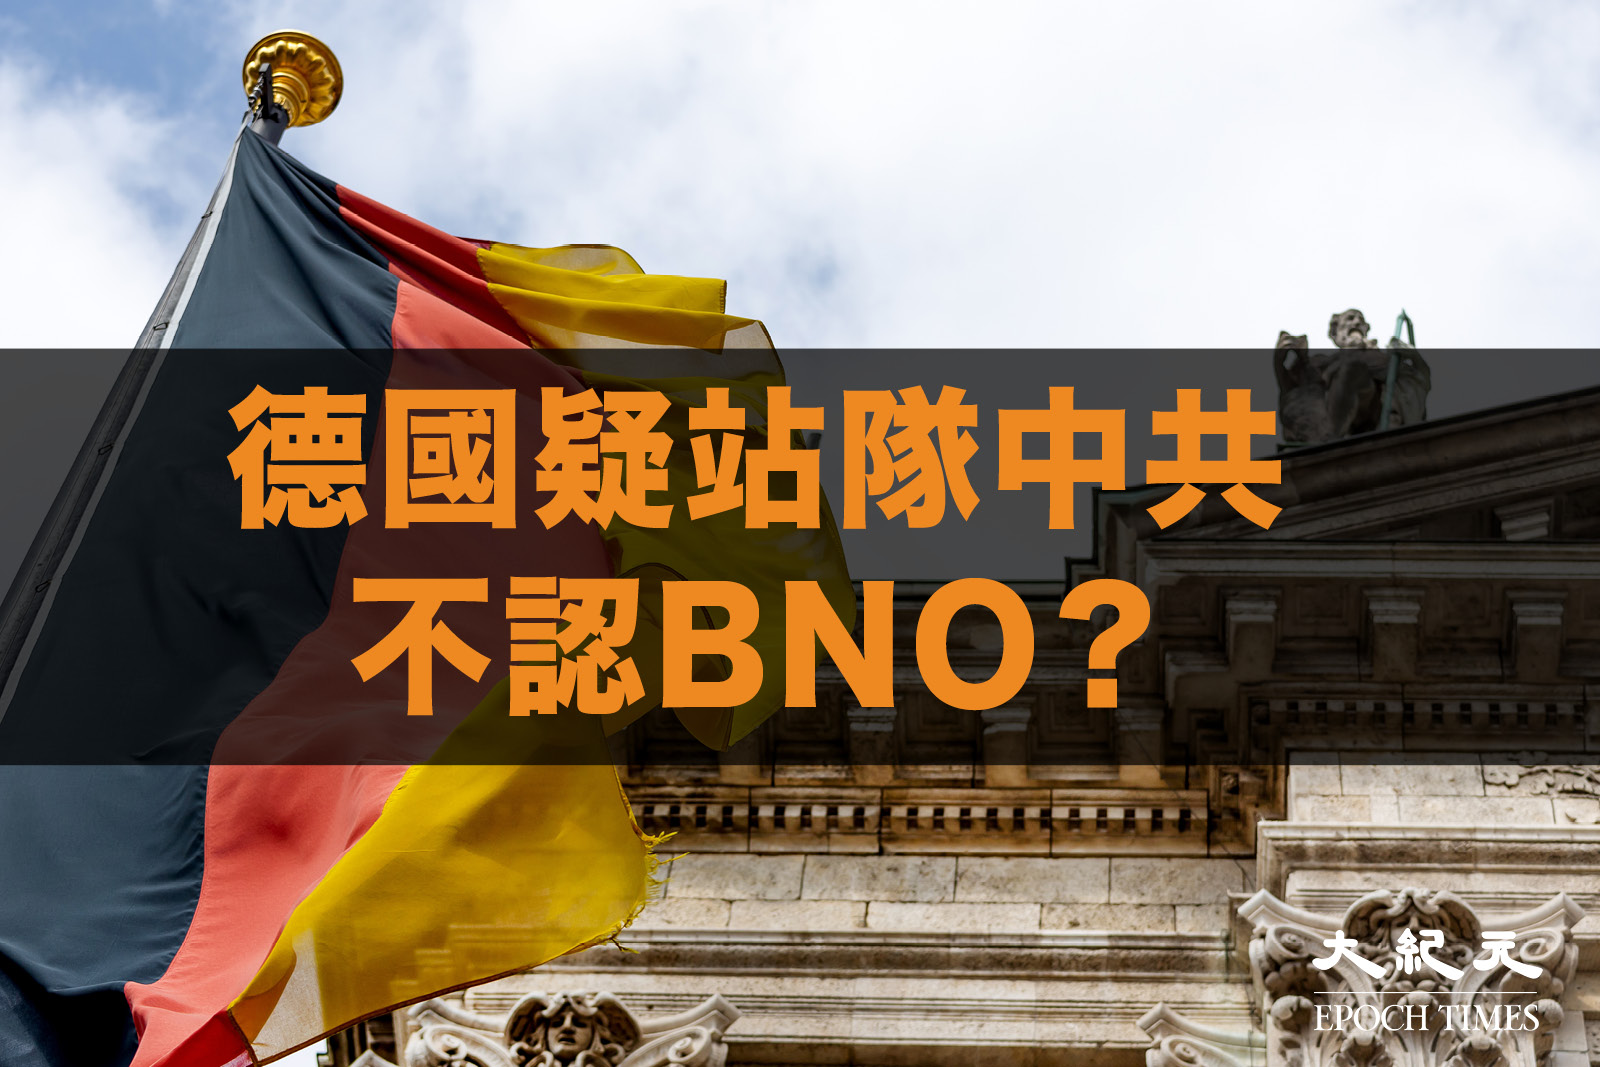 近日有數名港人以BNO護照申請學生簽證或工作假期時，不獲德國承認。「香港監察」對德國不再承認BNO護照的有關報道表示深切憂慮，呼籲德國當局立即發表聲明，明確德方在BNO護照上的立場。（大紀元製圖）